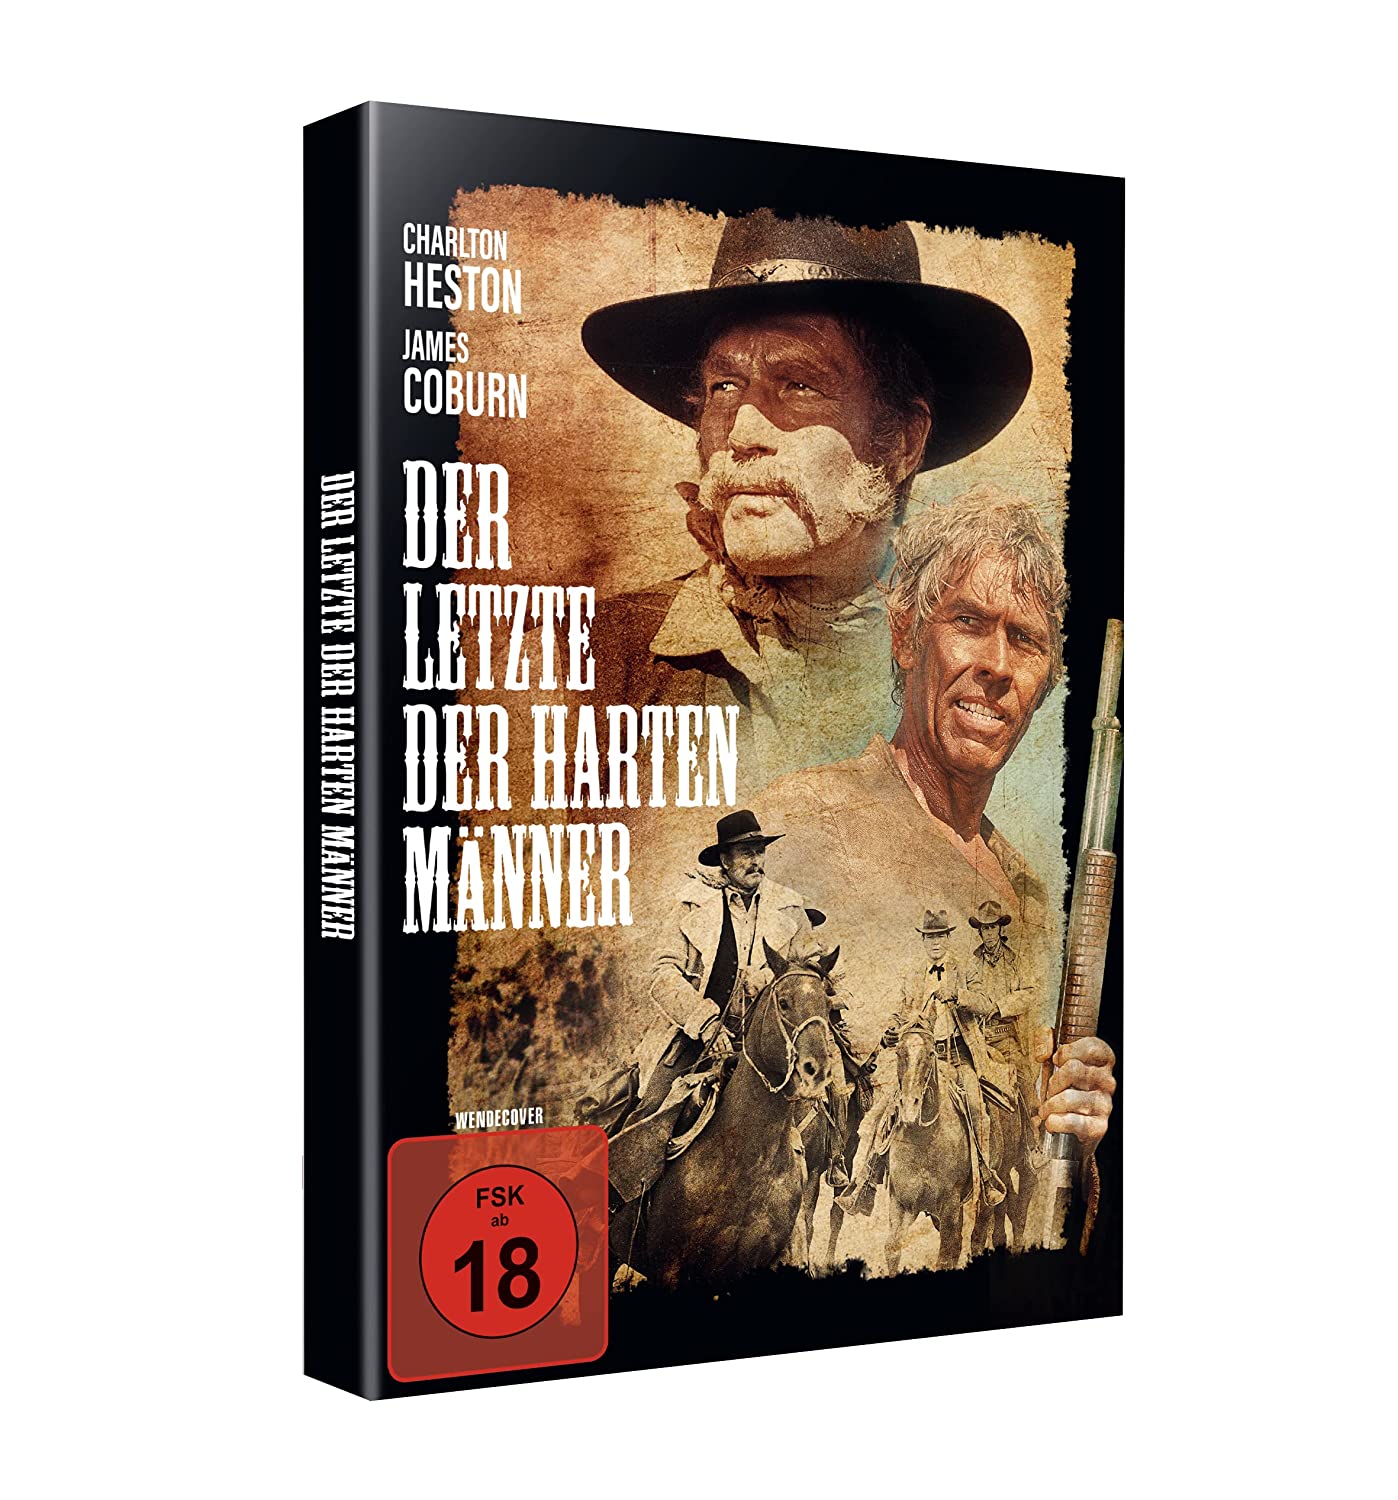 Der letzte der harten Männer (DVD)